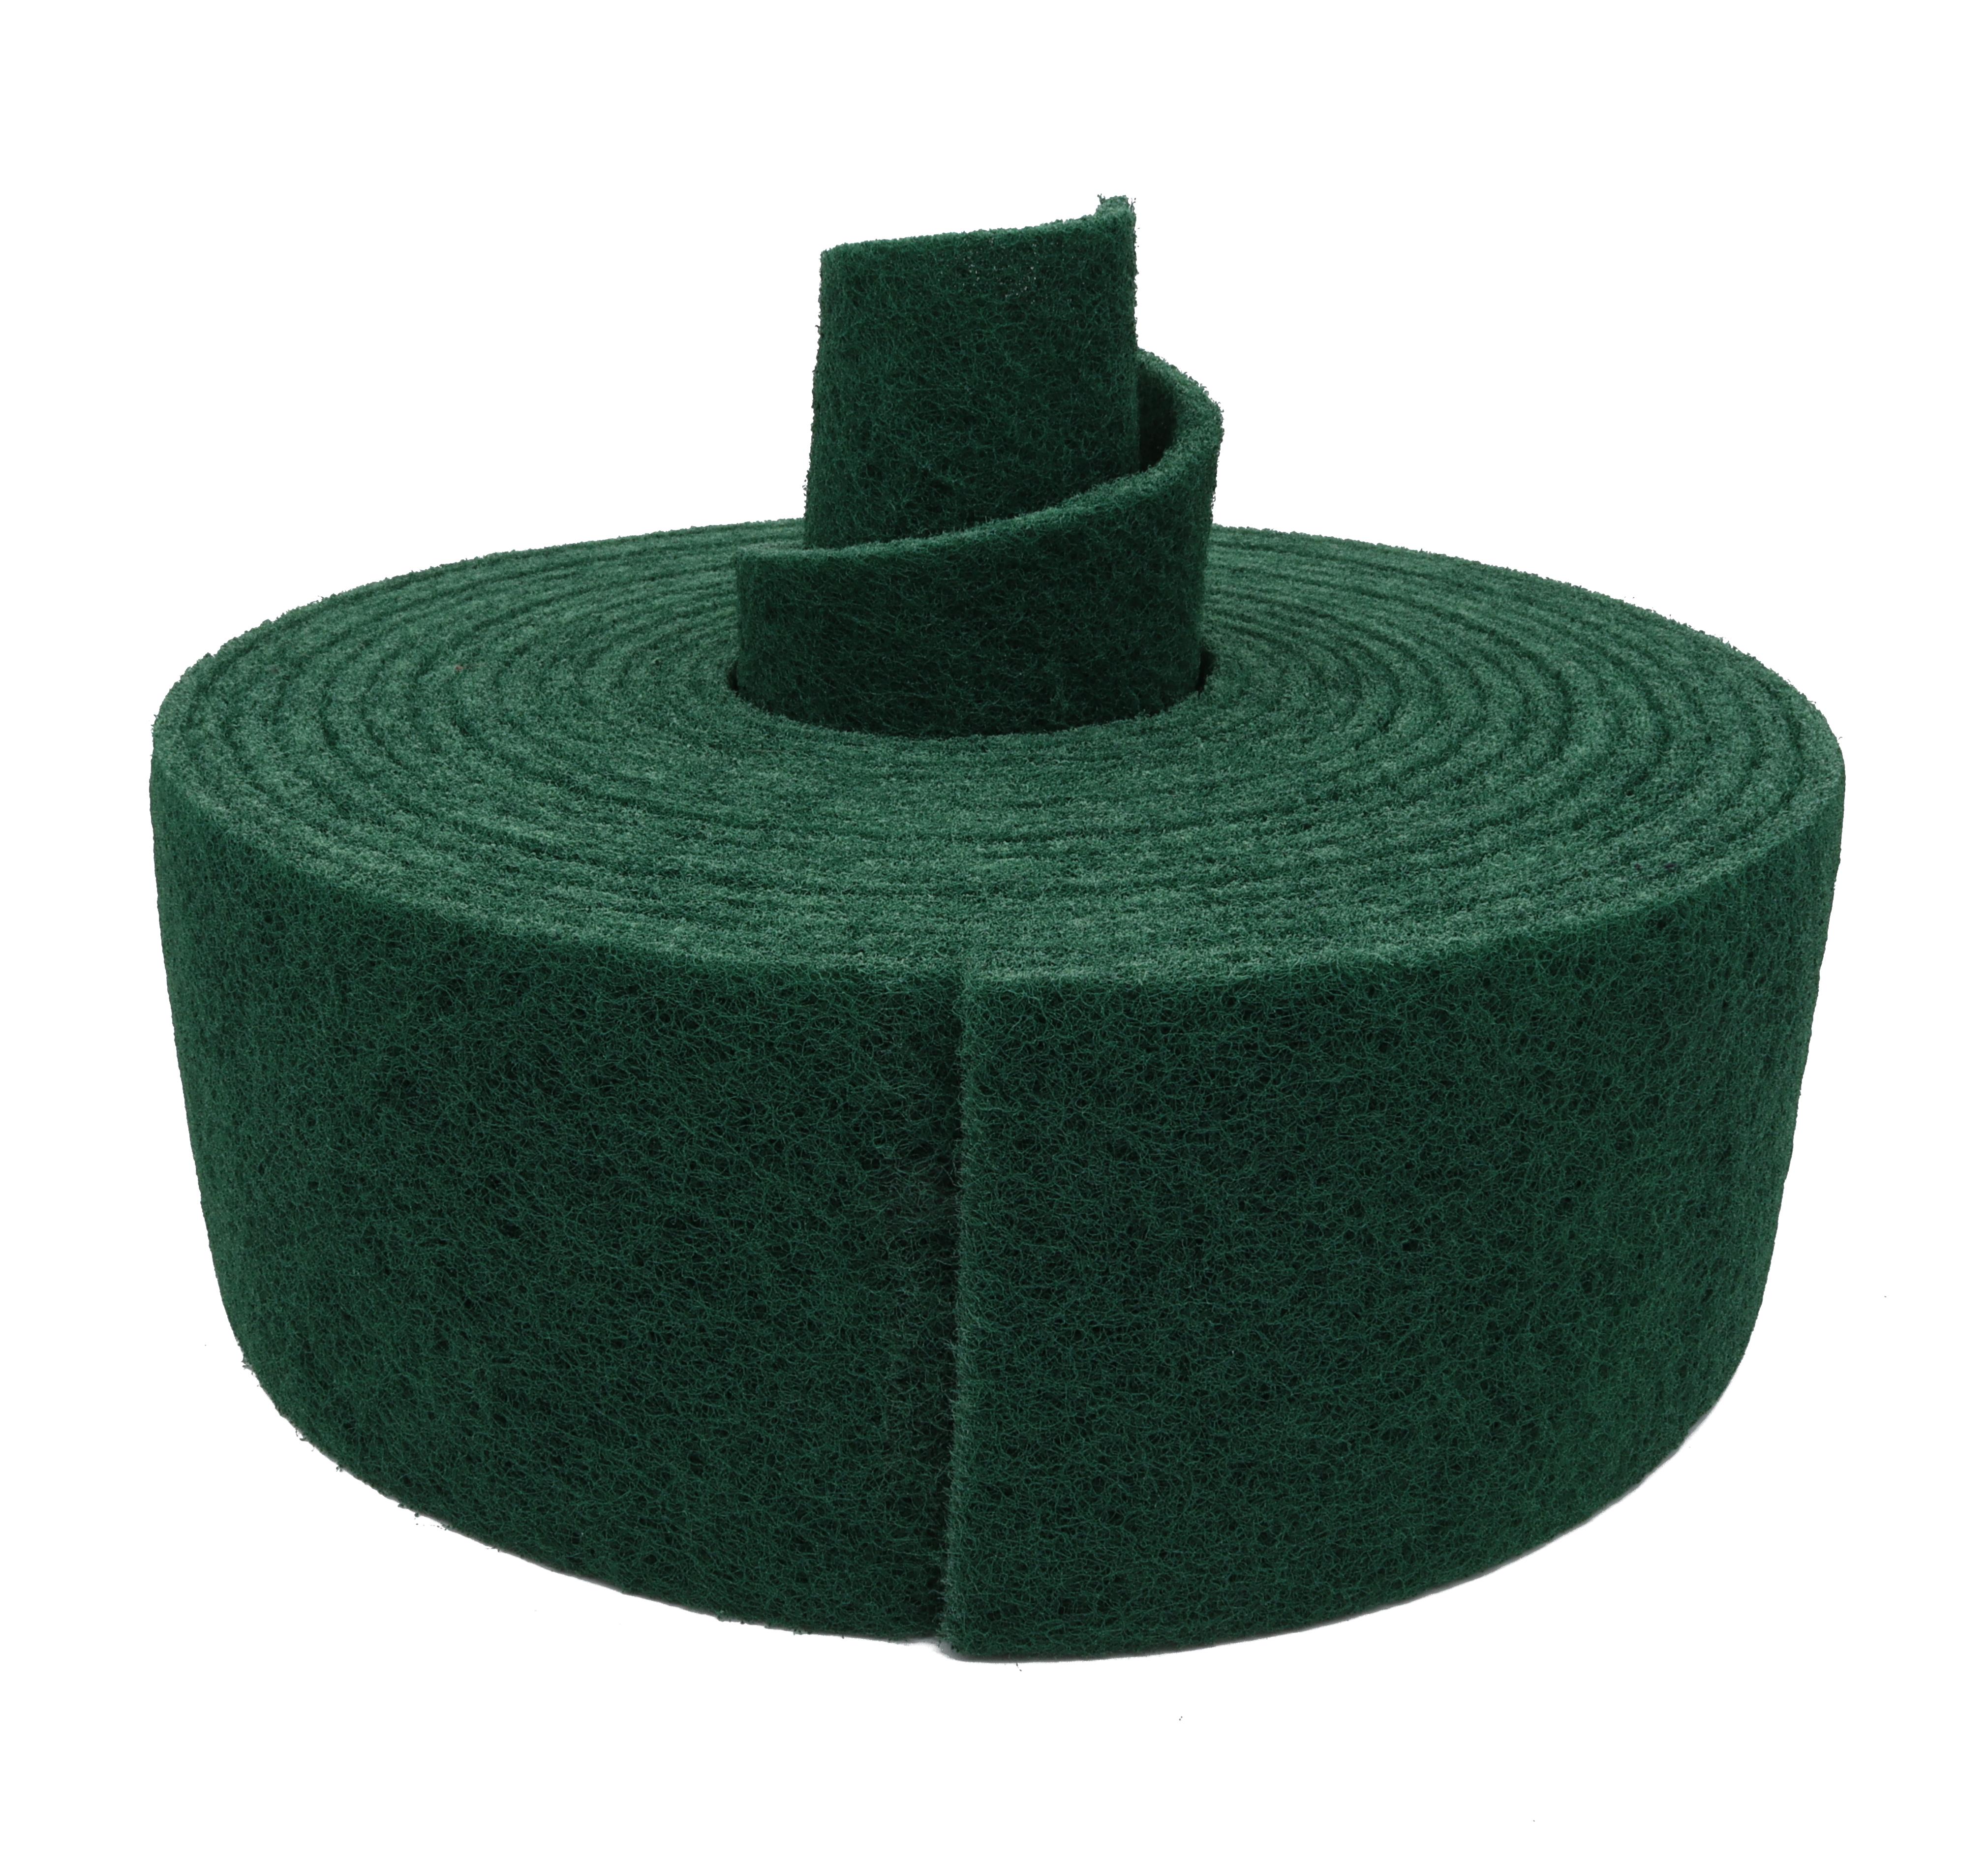 Schleifvlies Rolle grün P240 100 mm x 10 m | Vliespad Schleifmatte mattieren 10m